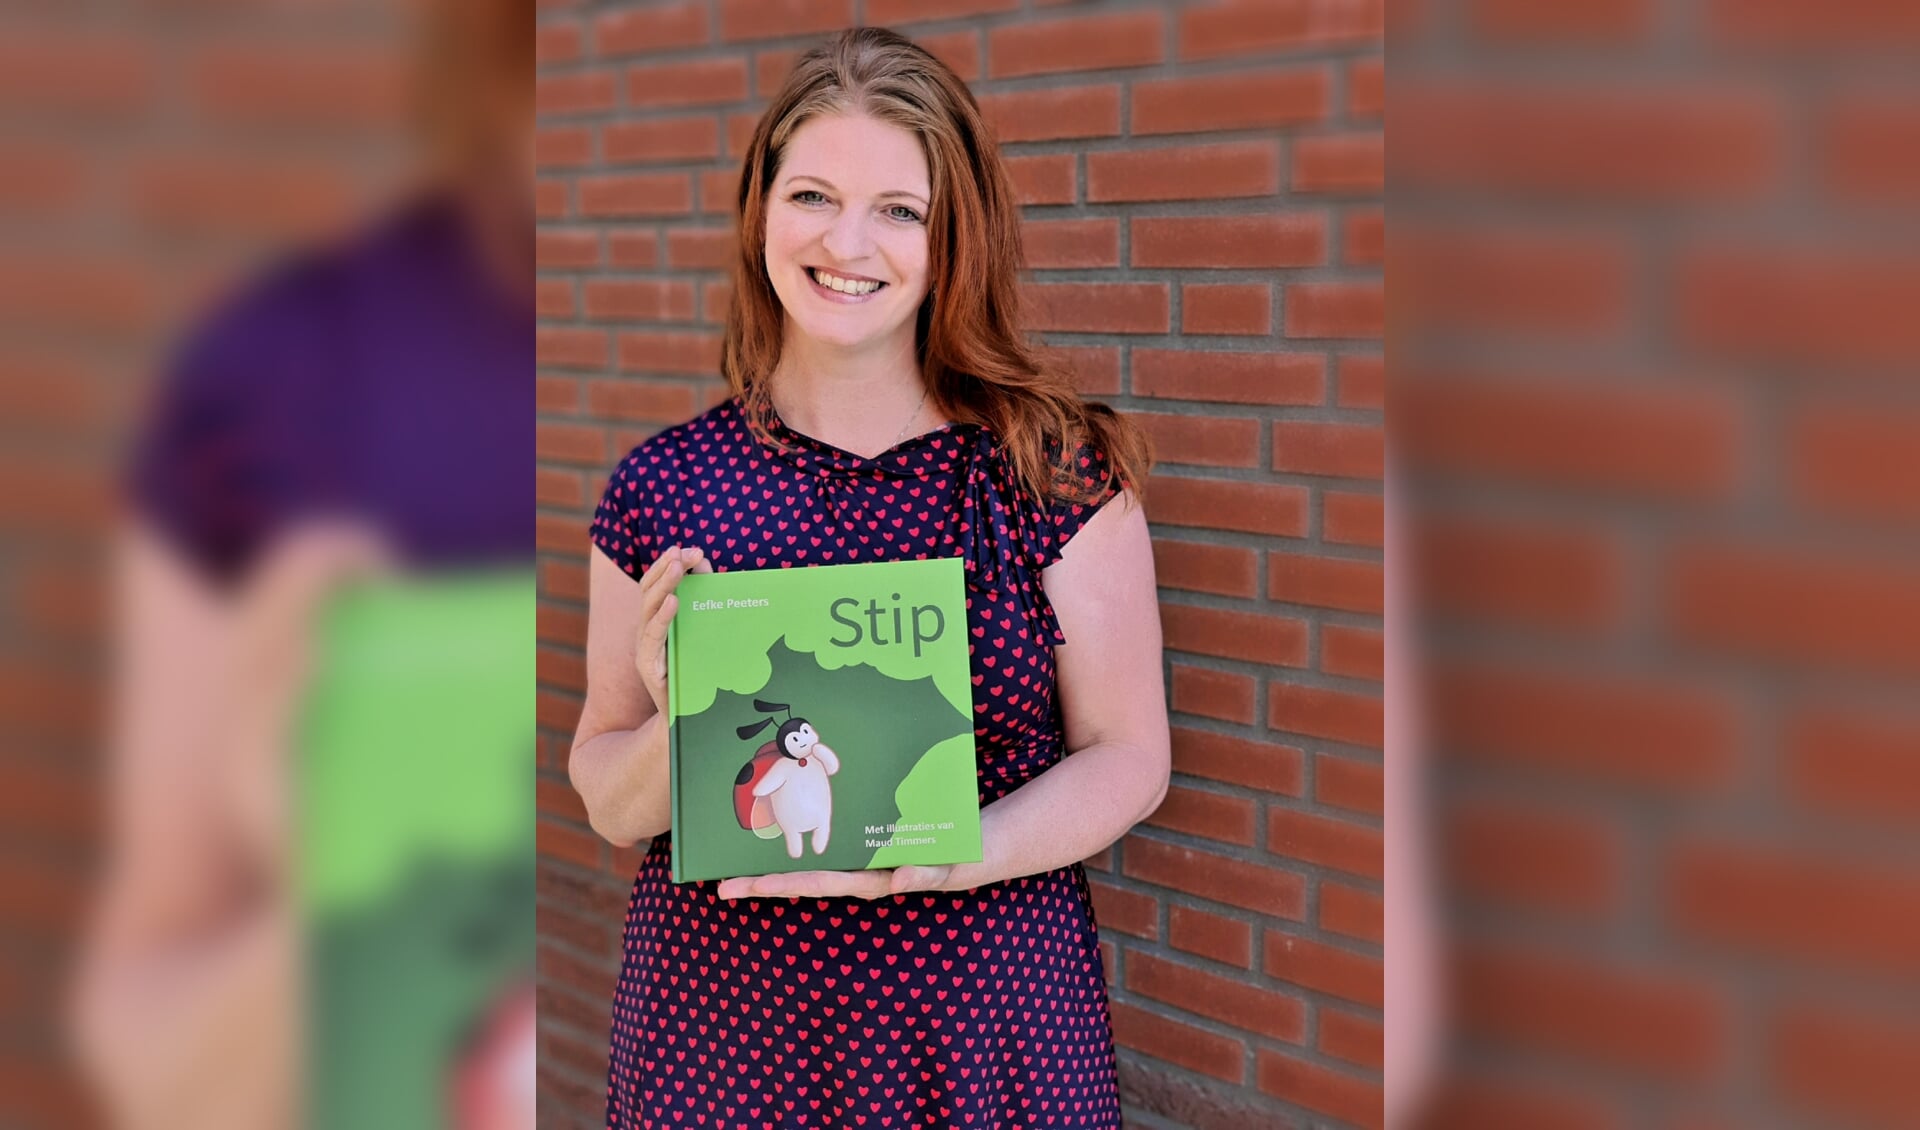 Eefke Peeters, columniste bij onder andere landvancuijk.nl, heeft het kinderboek 'Stip' uitgegeven.